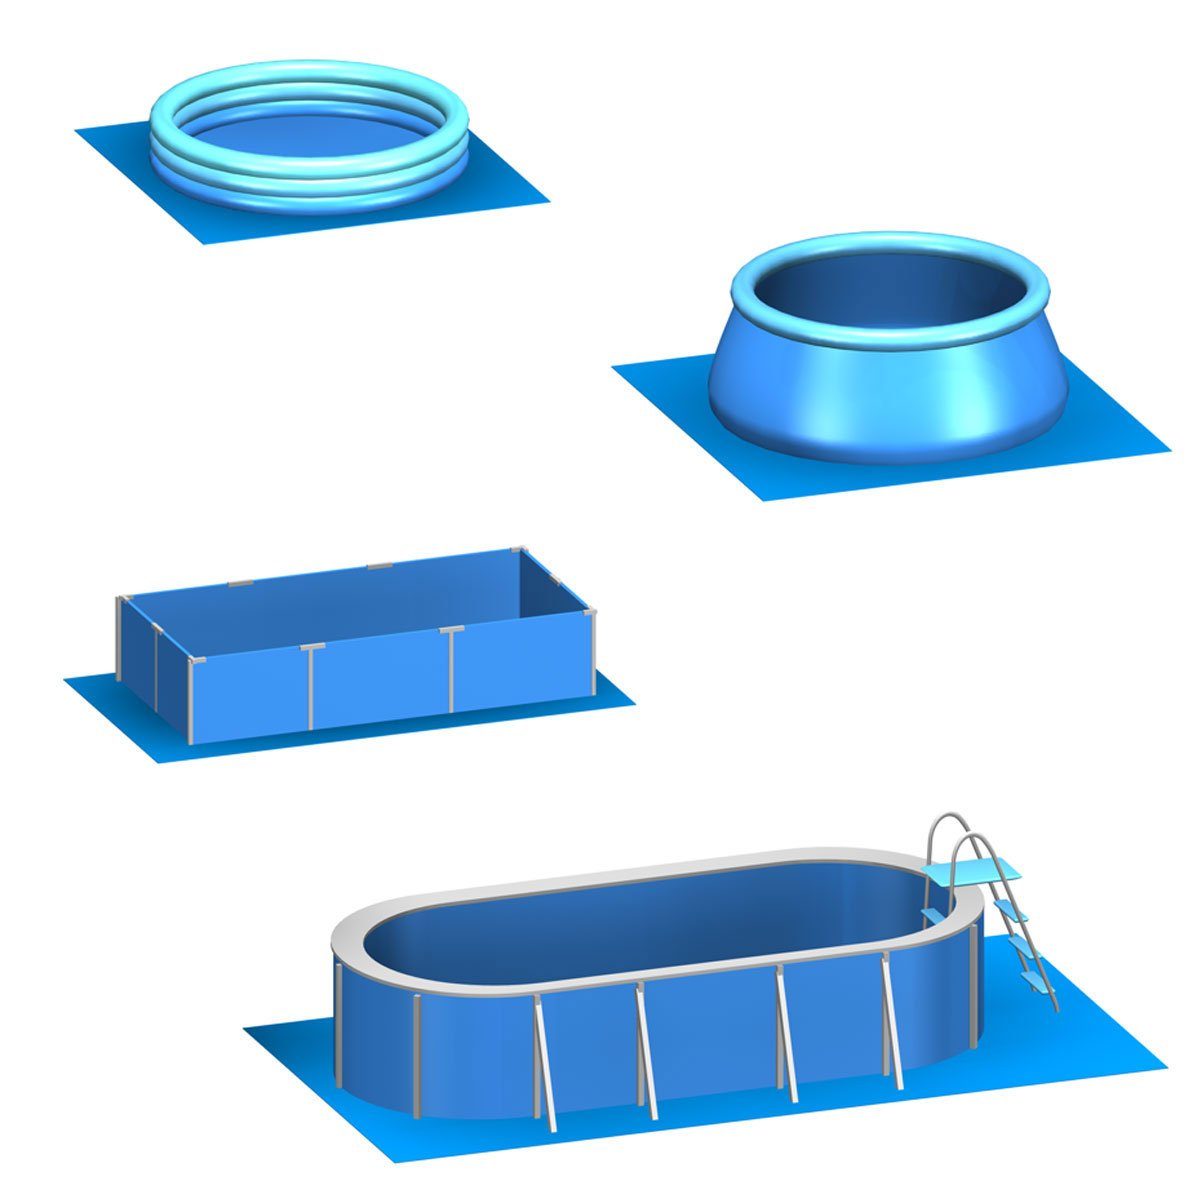 eyepower Bodenmatte 1,9m² Poolunterlage - Große 8 Pool 50x50cm, - Poolmatten Bodenschutzmatte Outdoor